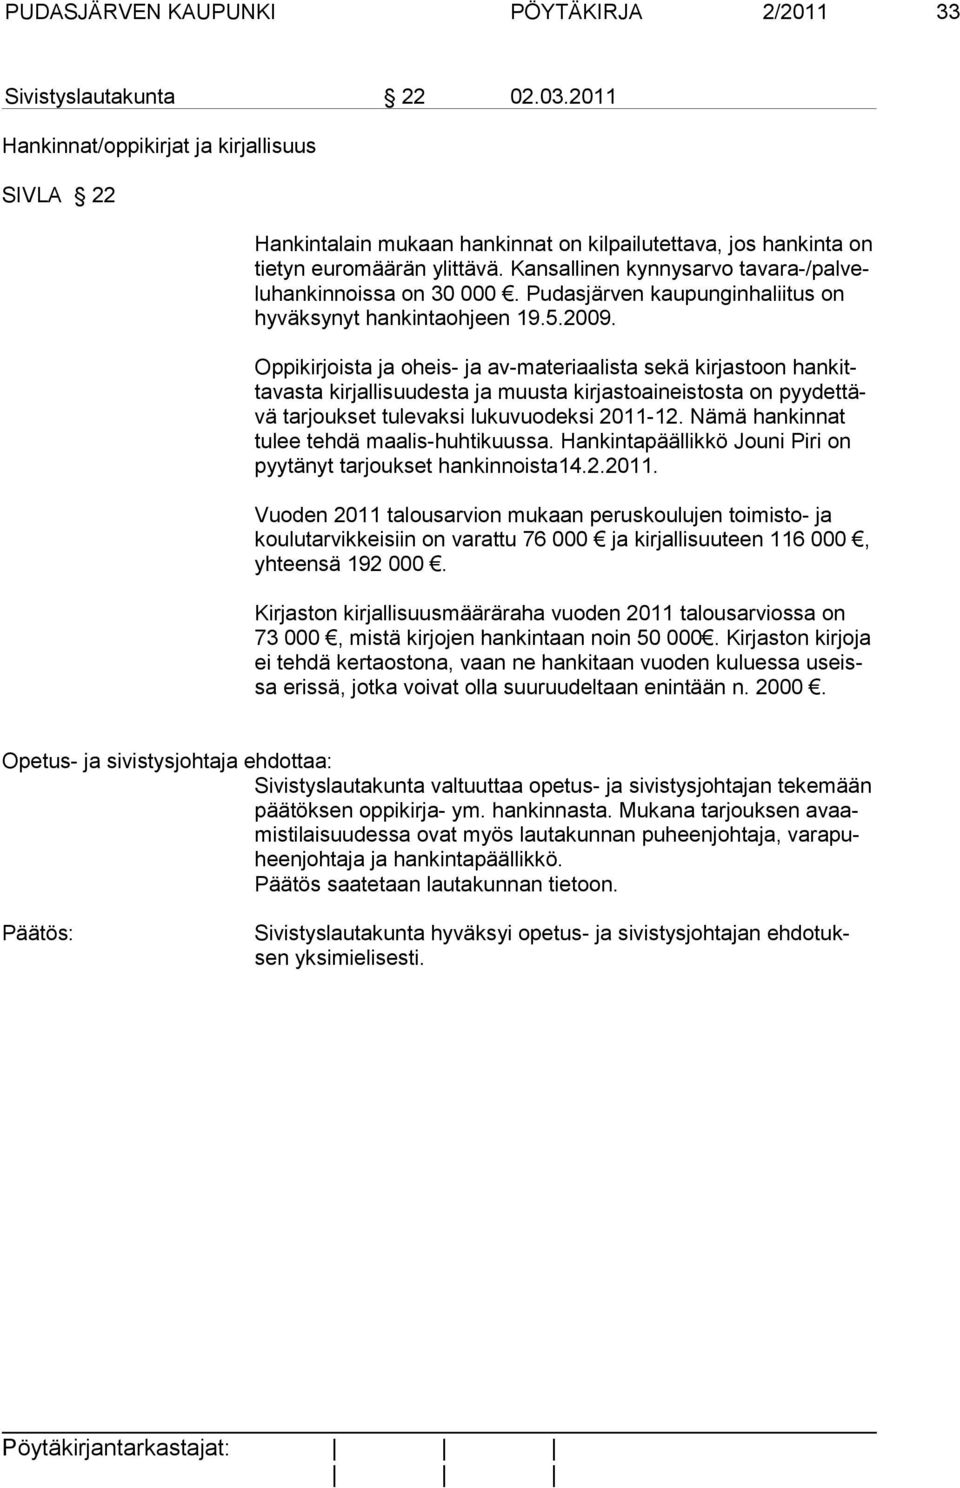 Kansallinen kynnysarvo tavara-/palveluhankinnoissa on 30 000. Pudasjärven kaupunginhaliitus on hy väksynyt hankintaohjeen 19.5.2009.